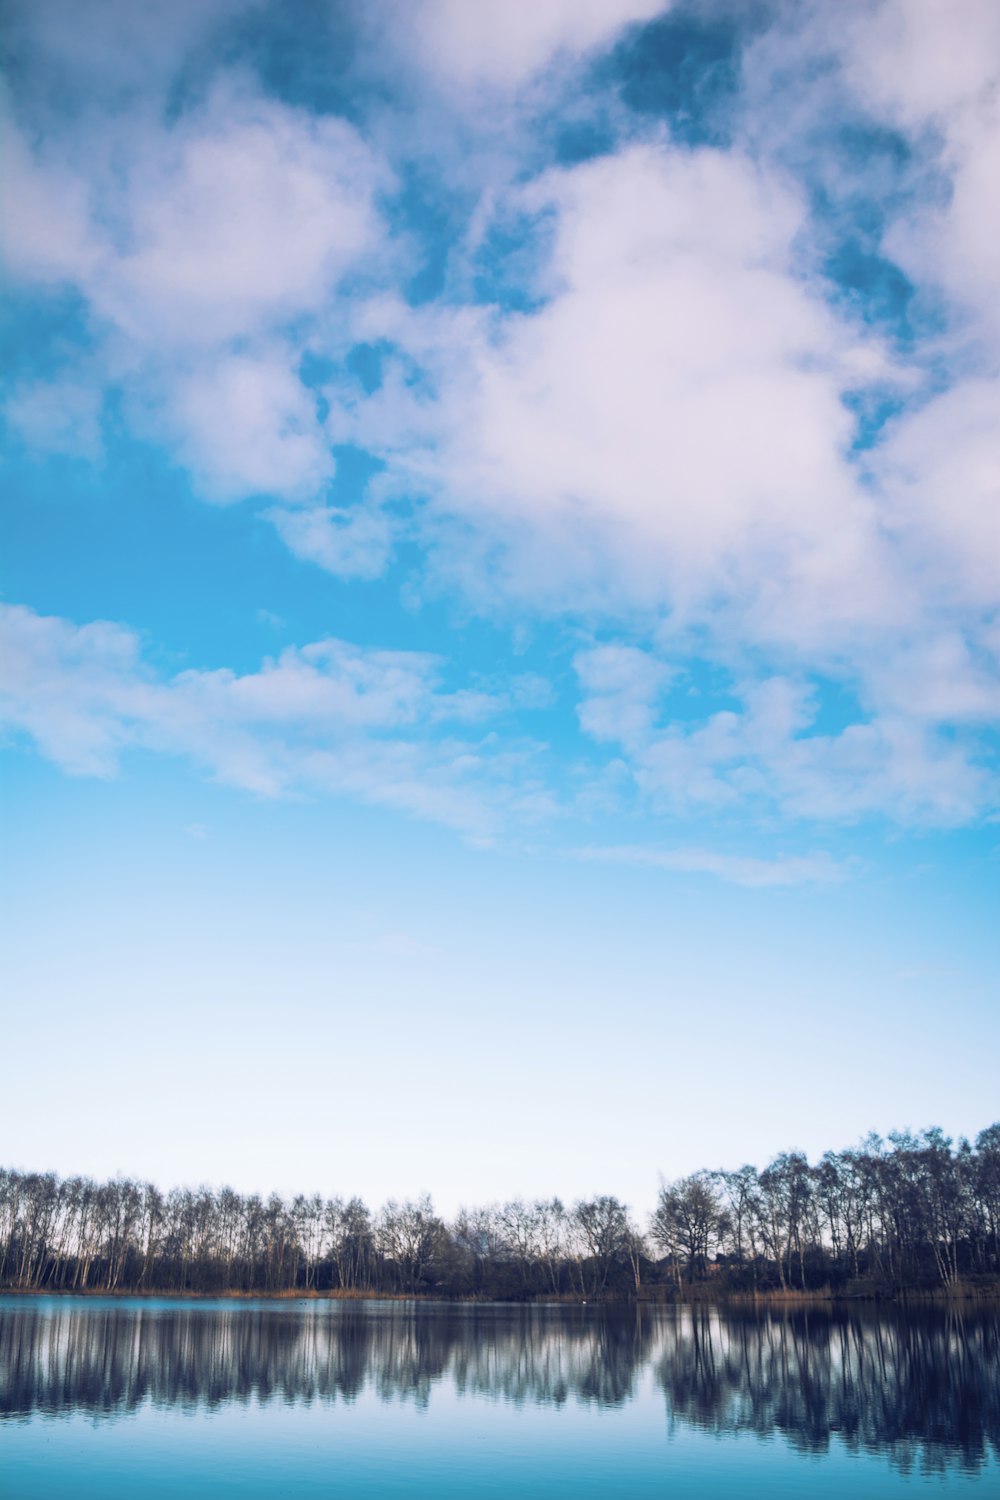 푸른 하늘 아래 수목 라인으로 잔잔한 수역